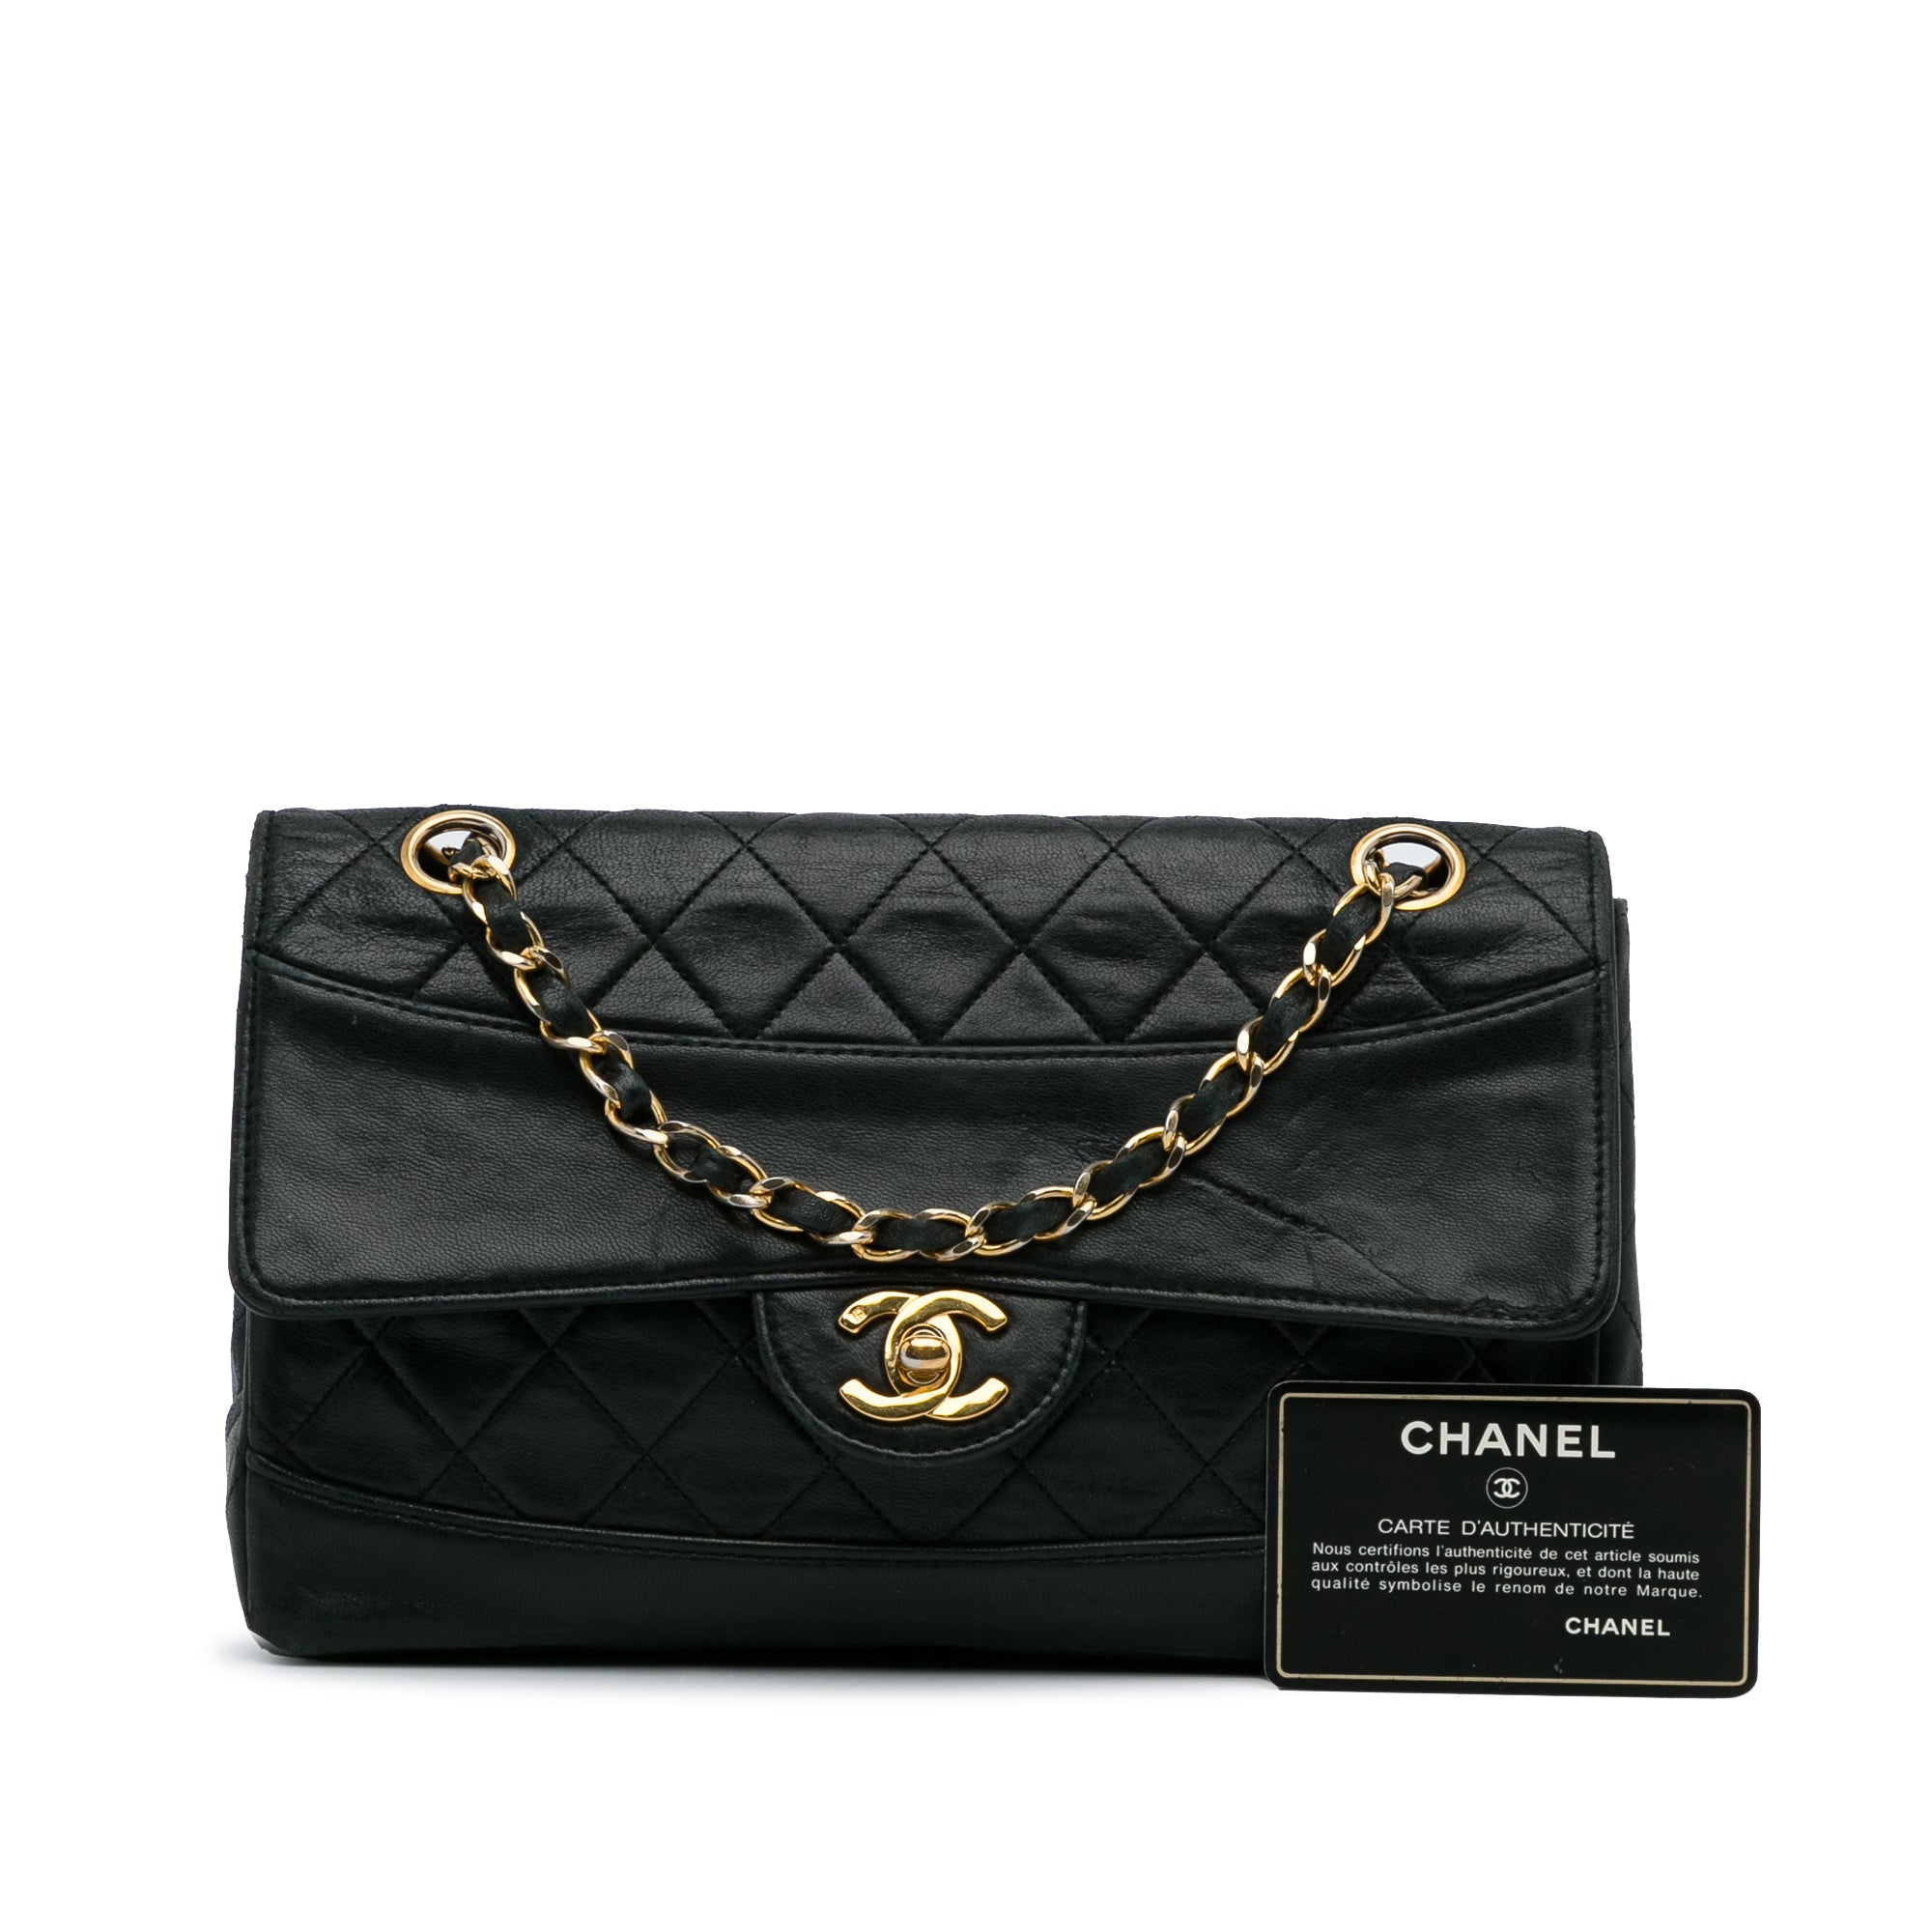 Chanel Travel Line Tote Bag Shoulder Bag 